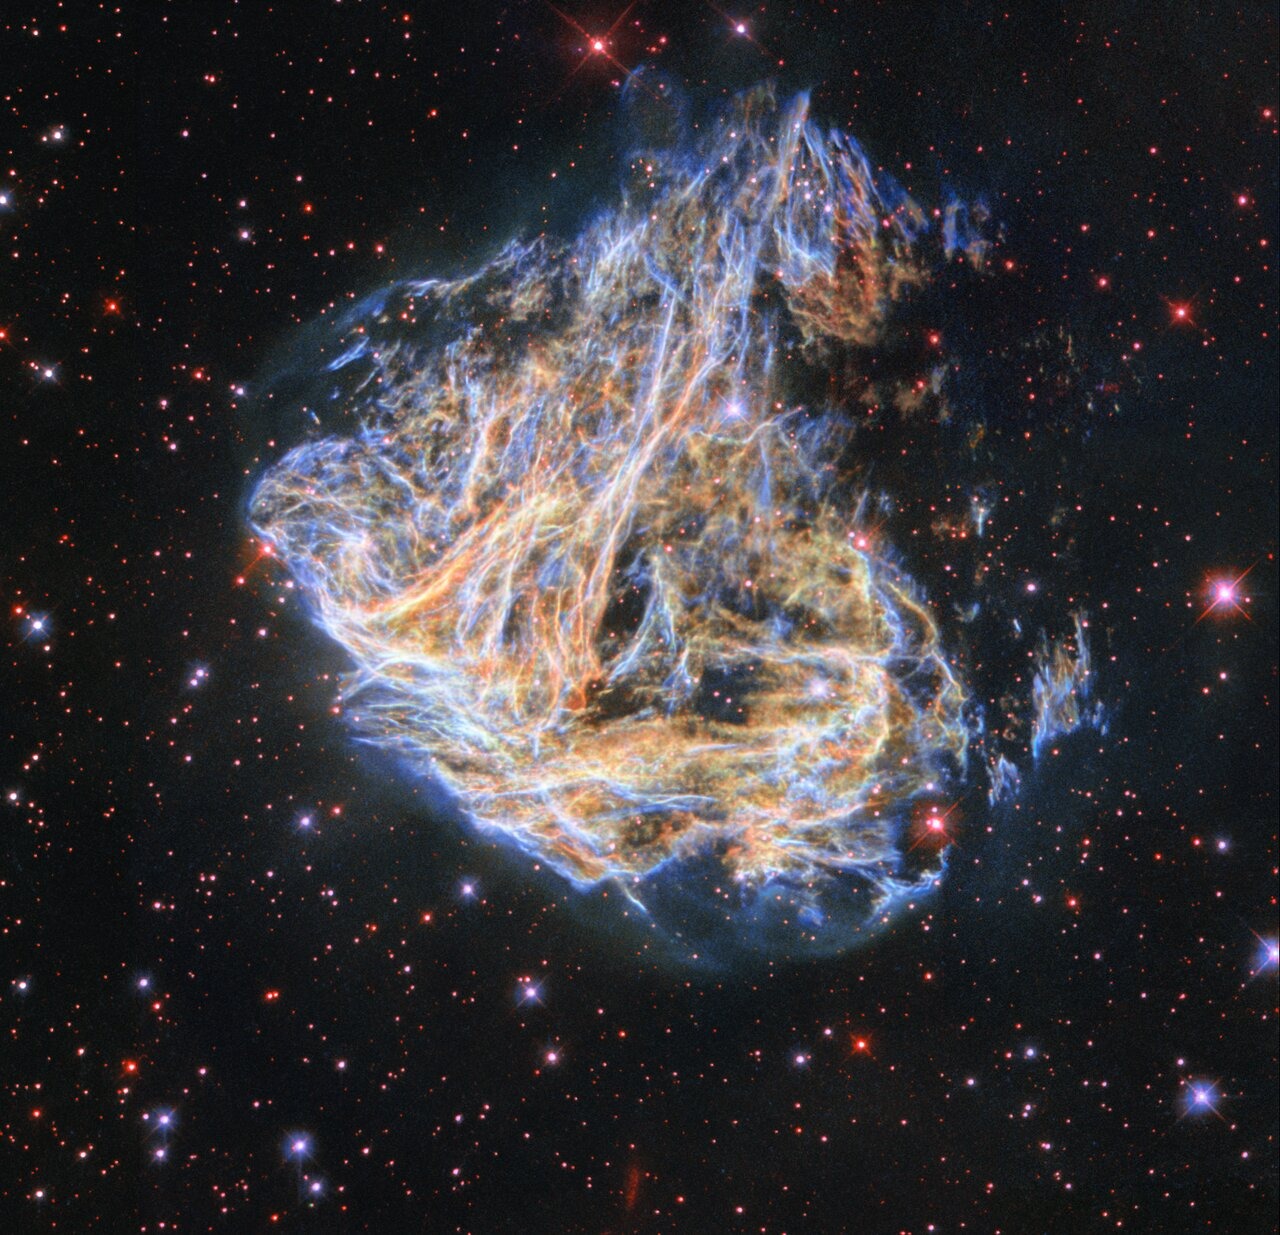 Šarene 'niti' i 'ploče' plina koji svijetli narančastom i plavom bojom ostatci su supernove koja se dogodila kada je masivna zvijezda došla do kraja svog života (©ESA/Hubble & NASA, S. Kulkarni, Y. Chu).